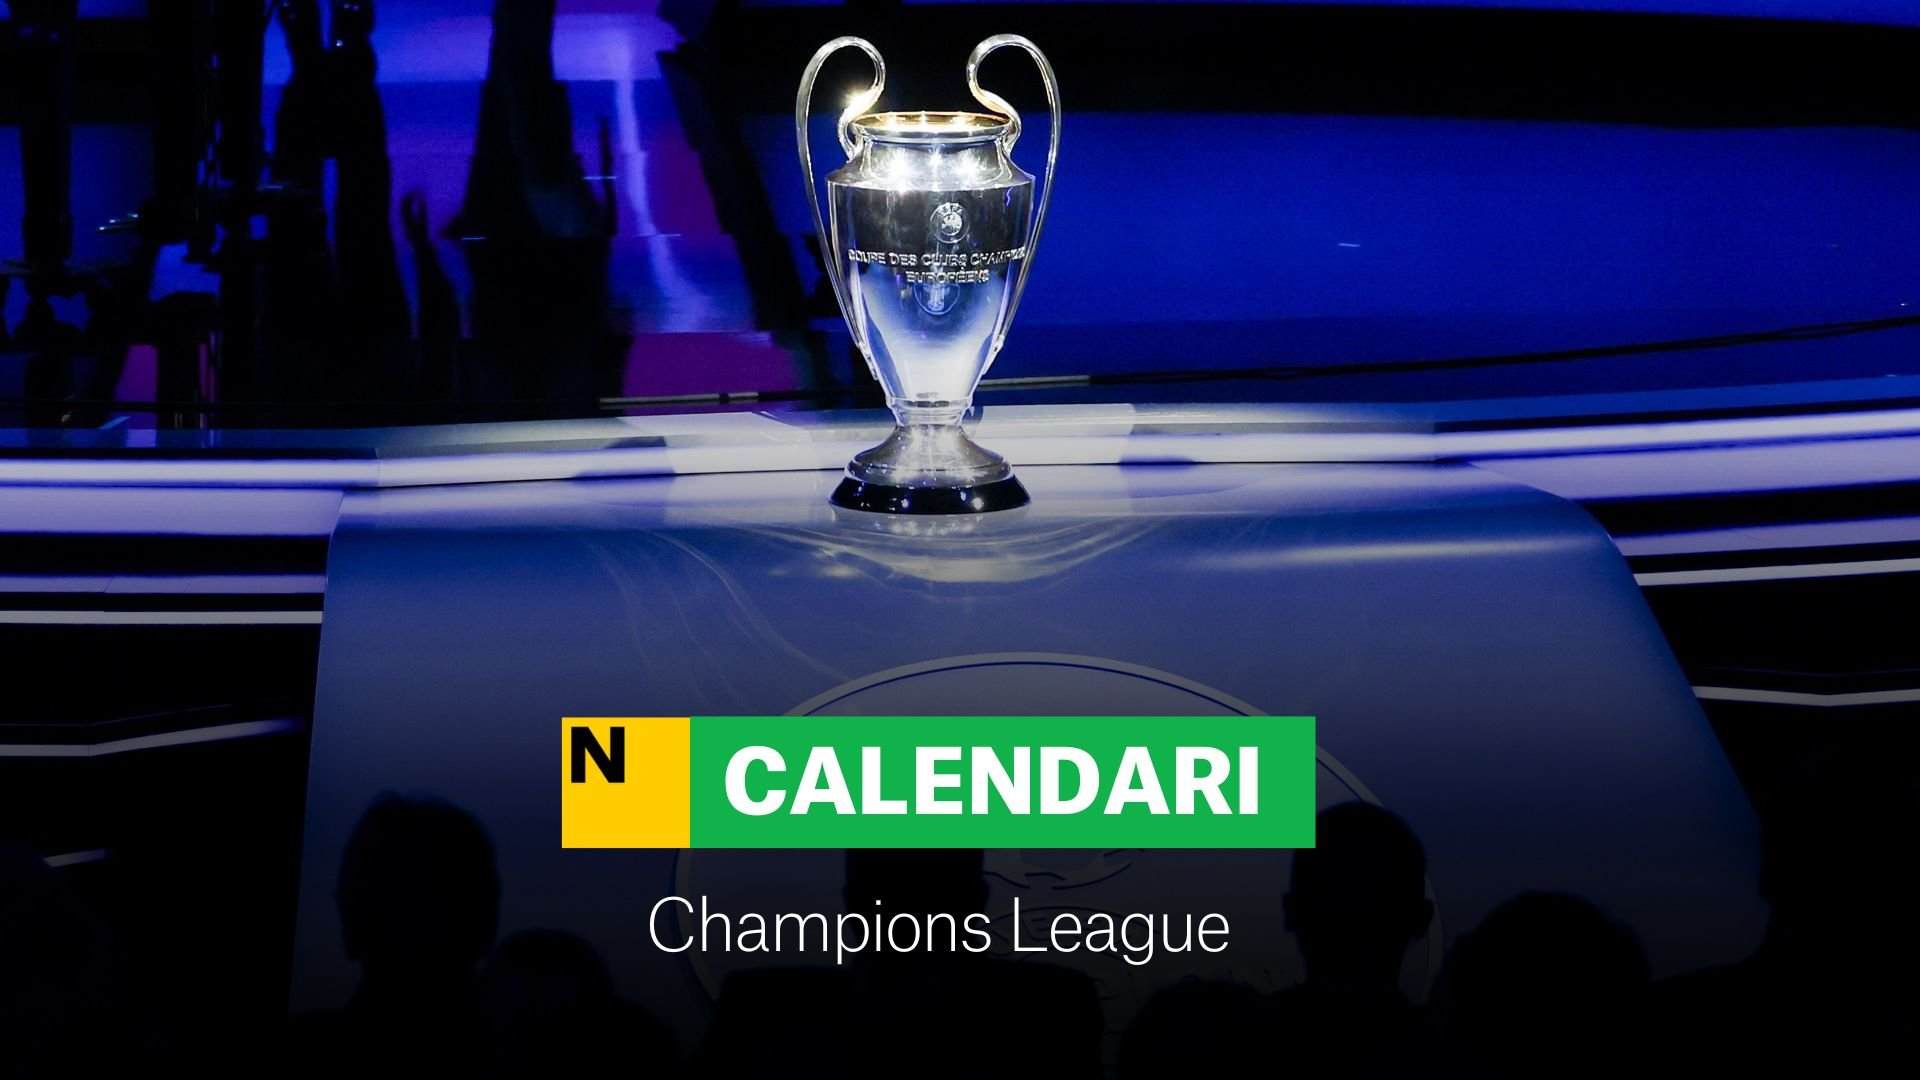 Champions League 2023/24: Grups, calendari i jornades